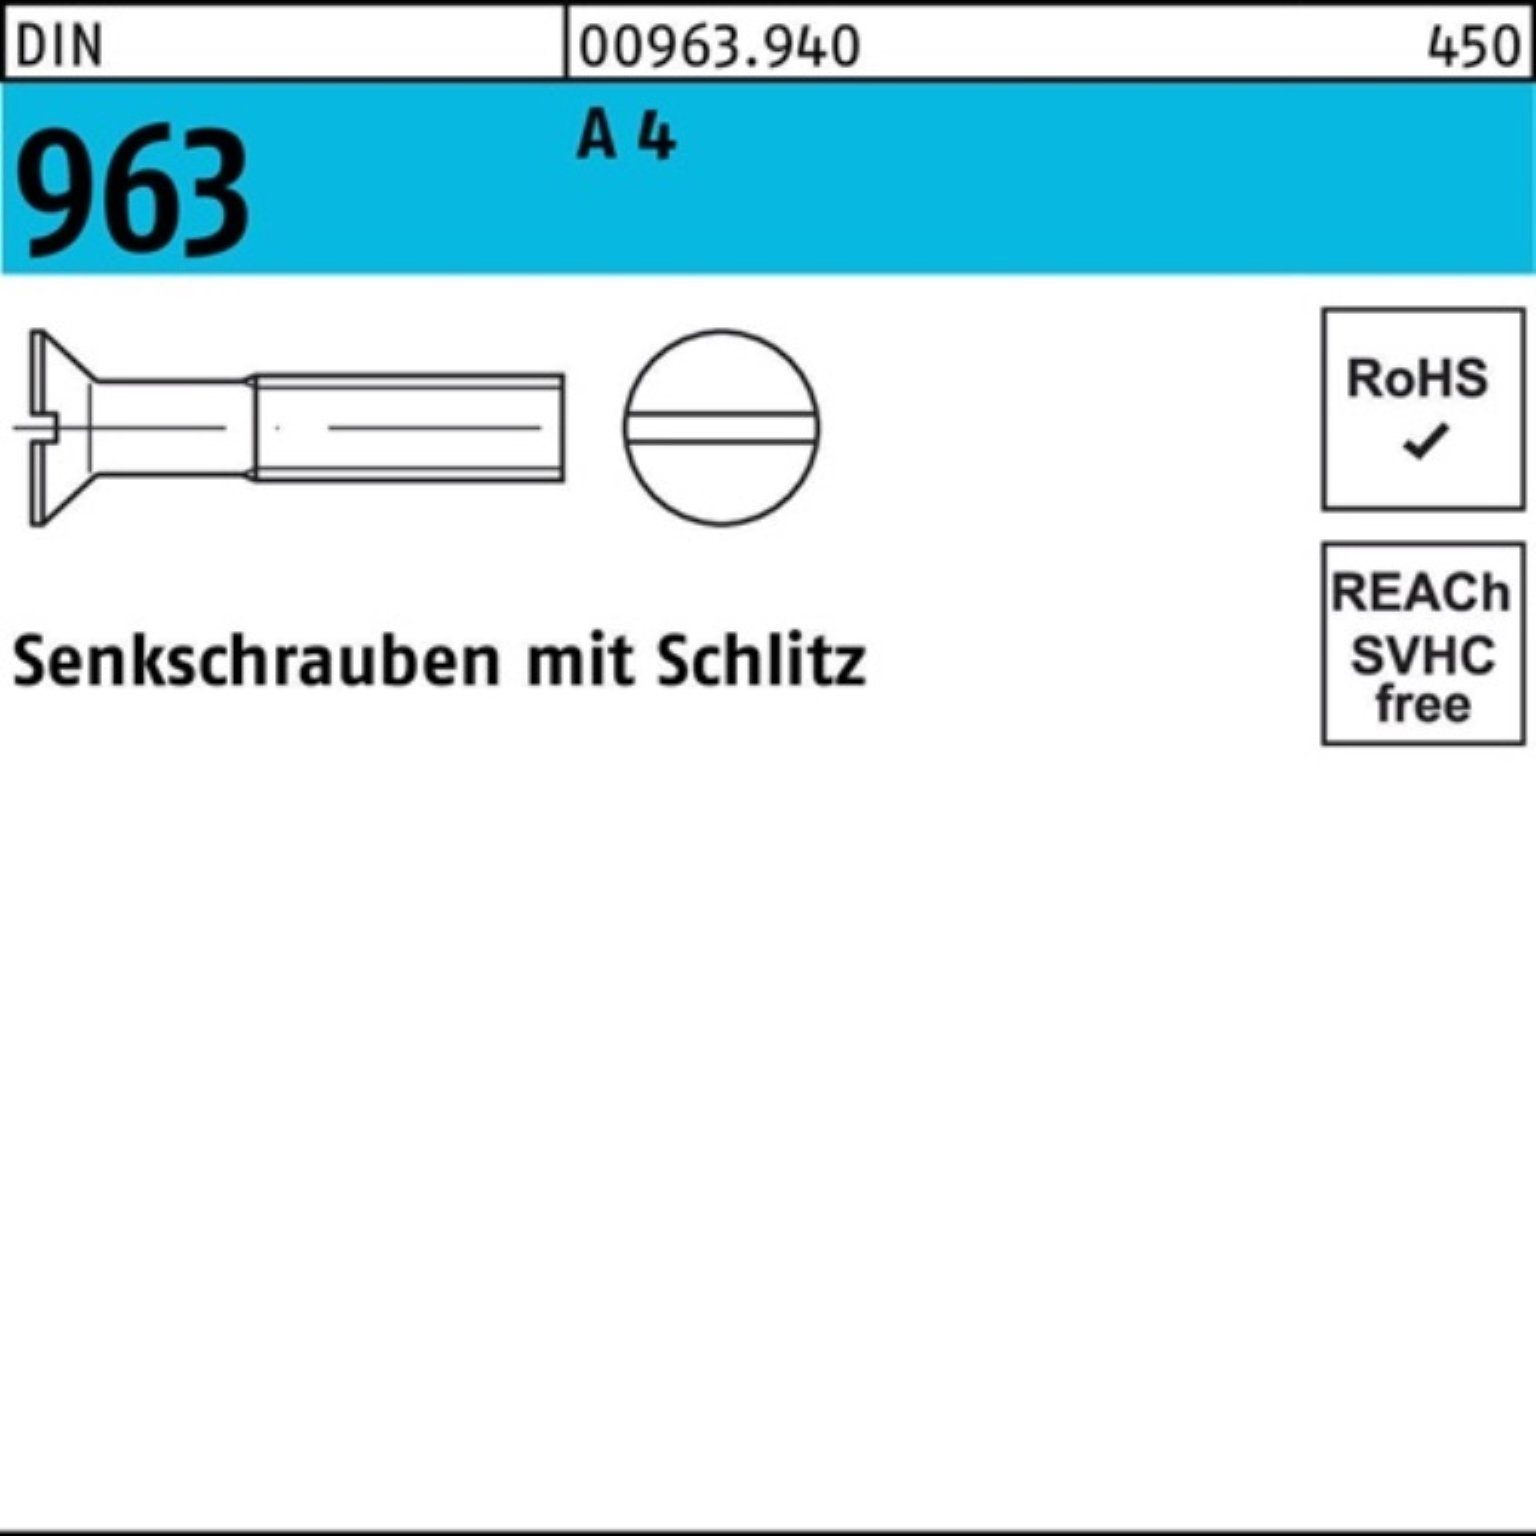 Senkschraube Schlitz 4 200 M4x DIN Senkschraube 963 200er Pack Reyher Stück A 16 DIN 963